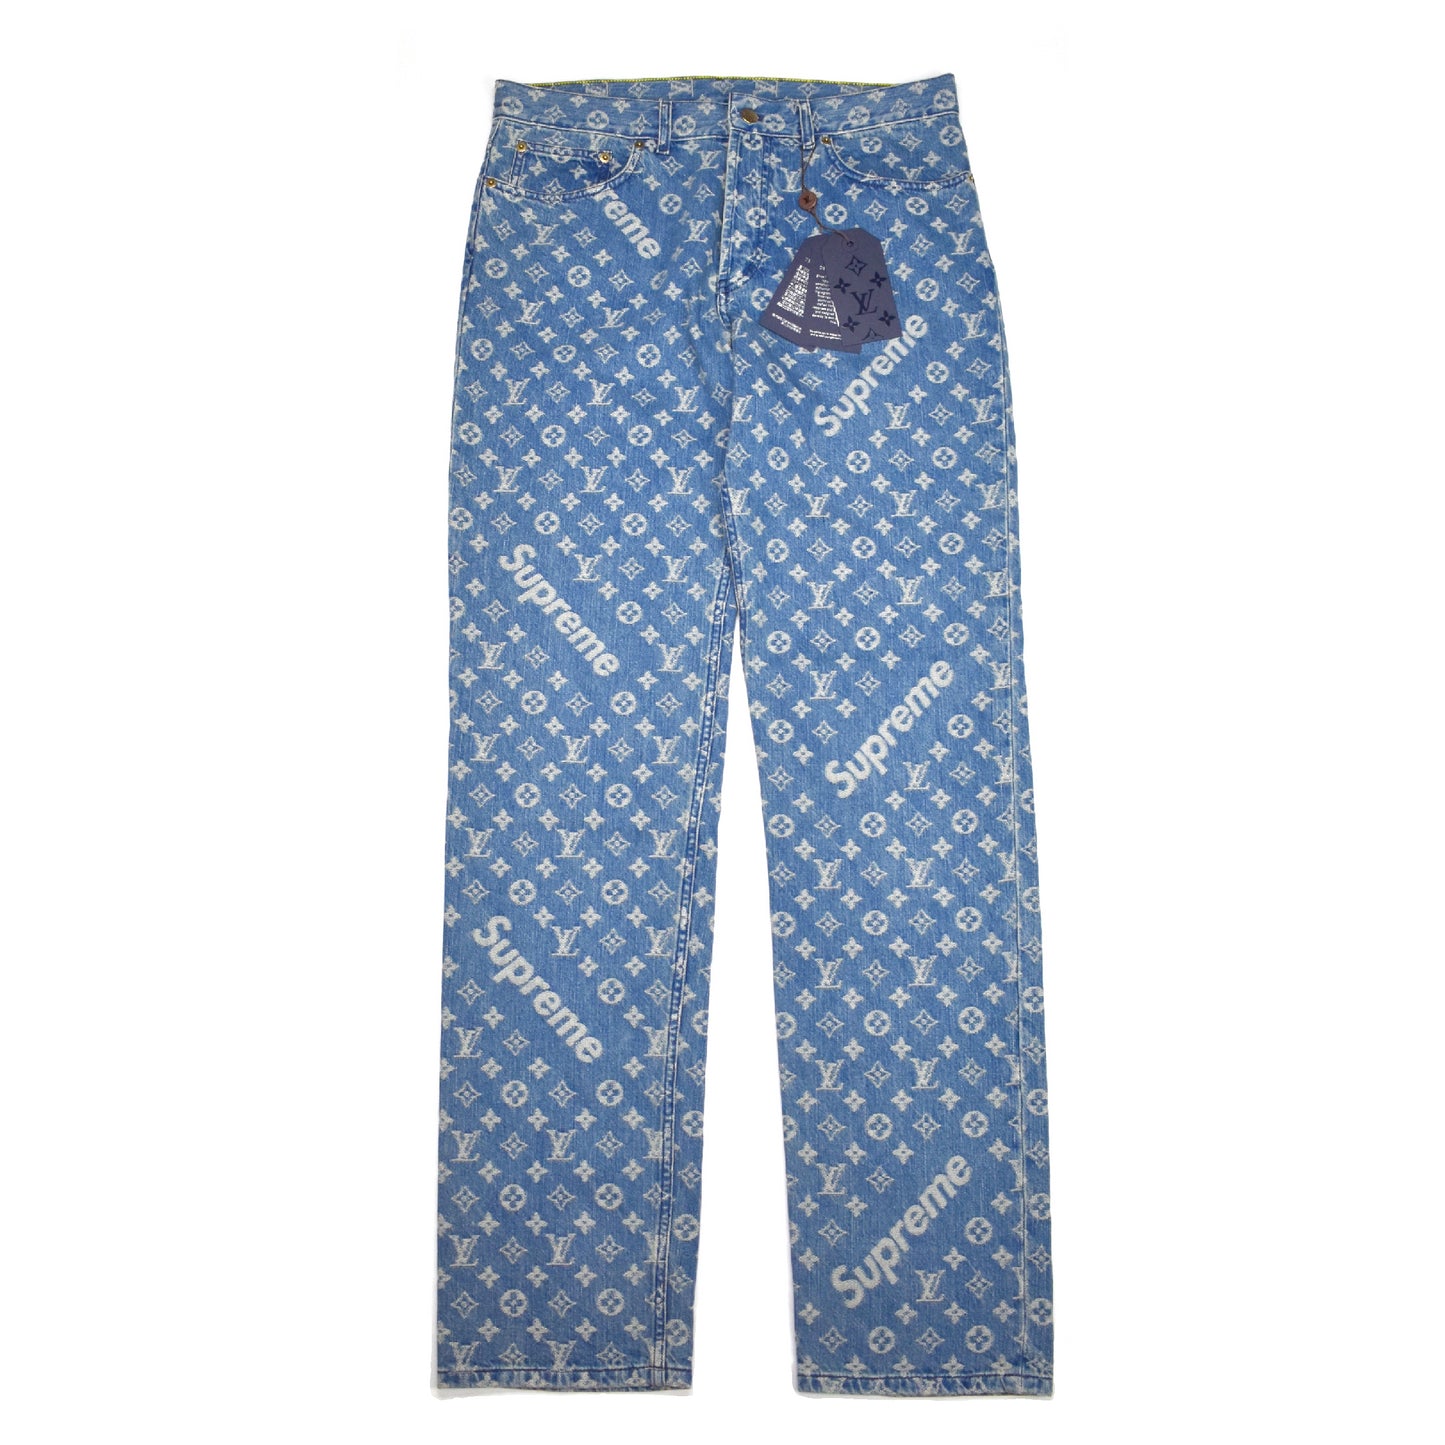 Supreme x Louis Vuitton Denim 5-Pocket Monogram Jeans Cut Into Shorts Size  LV 30